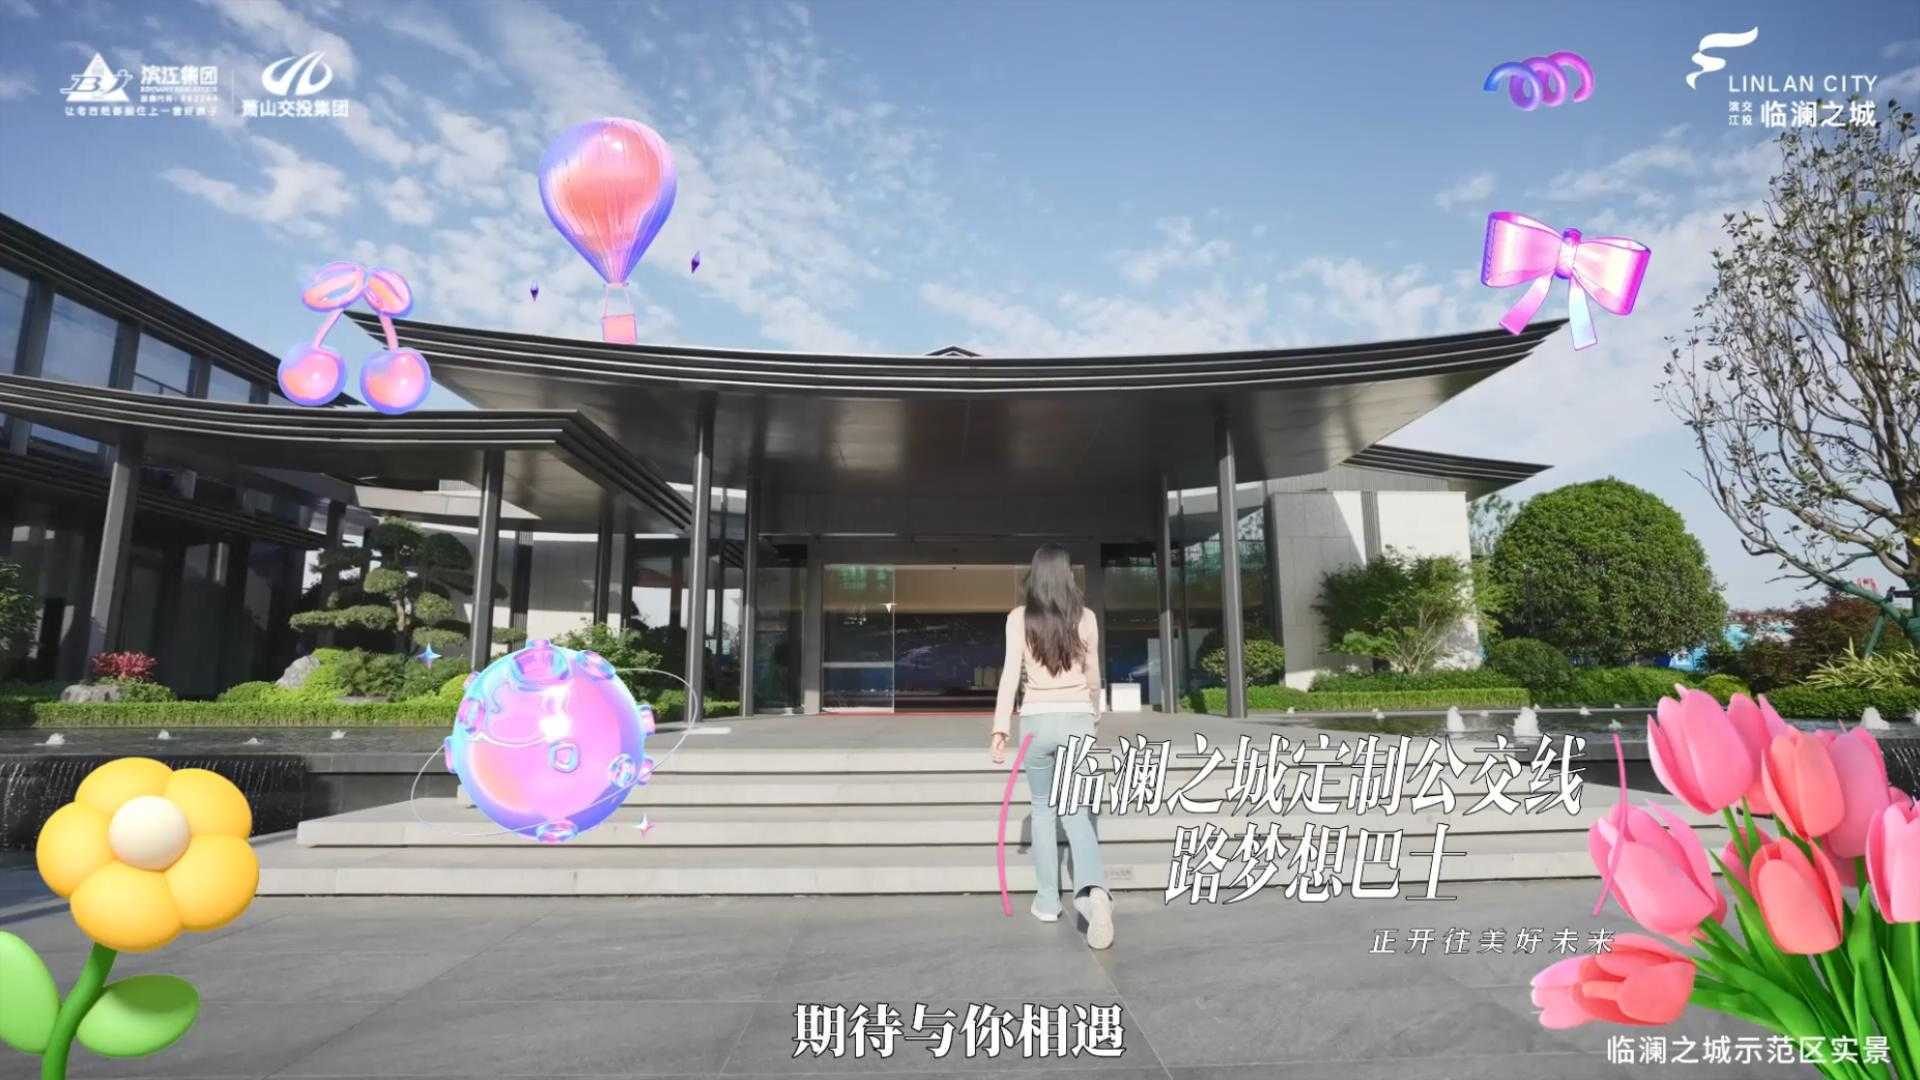 沃虎创意 | 滨江临澜之城梦想巴士宣传视频